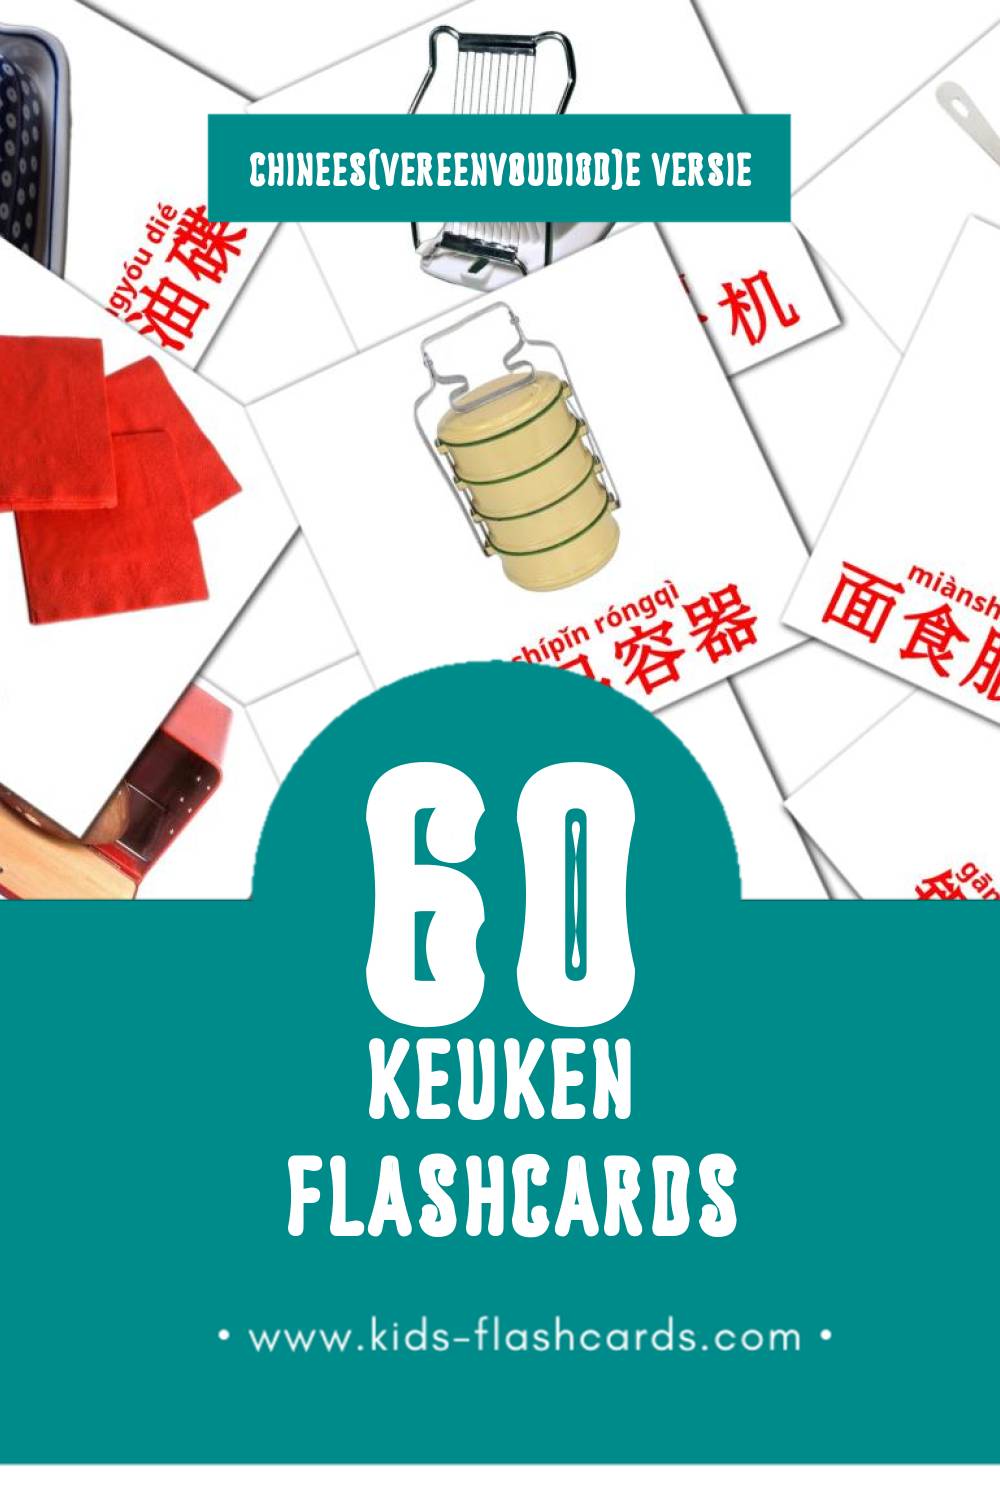 Visuele 厨房房间 Flashcards voor Kleuters (60 kaarten in het Chinees(vereenvoudigd))